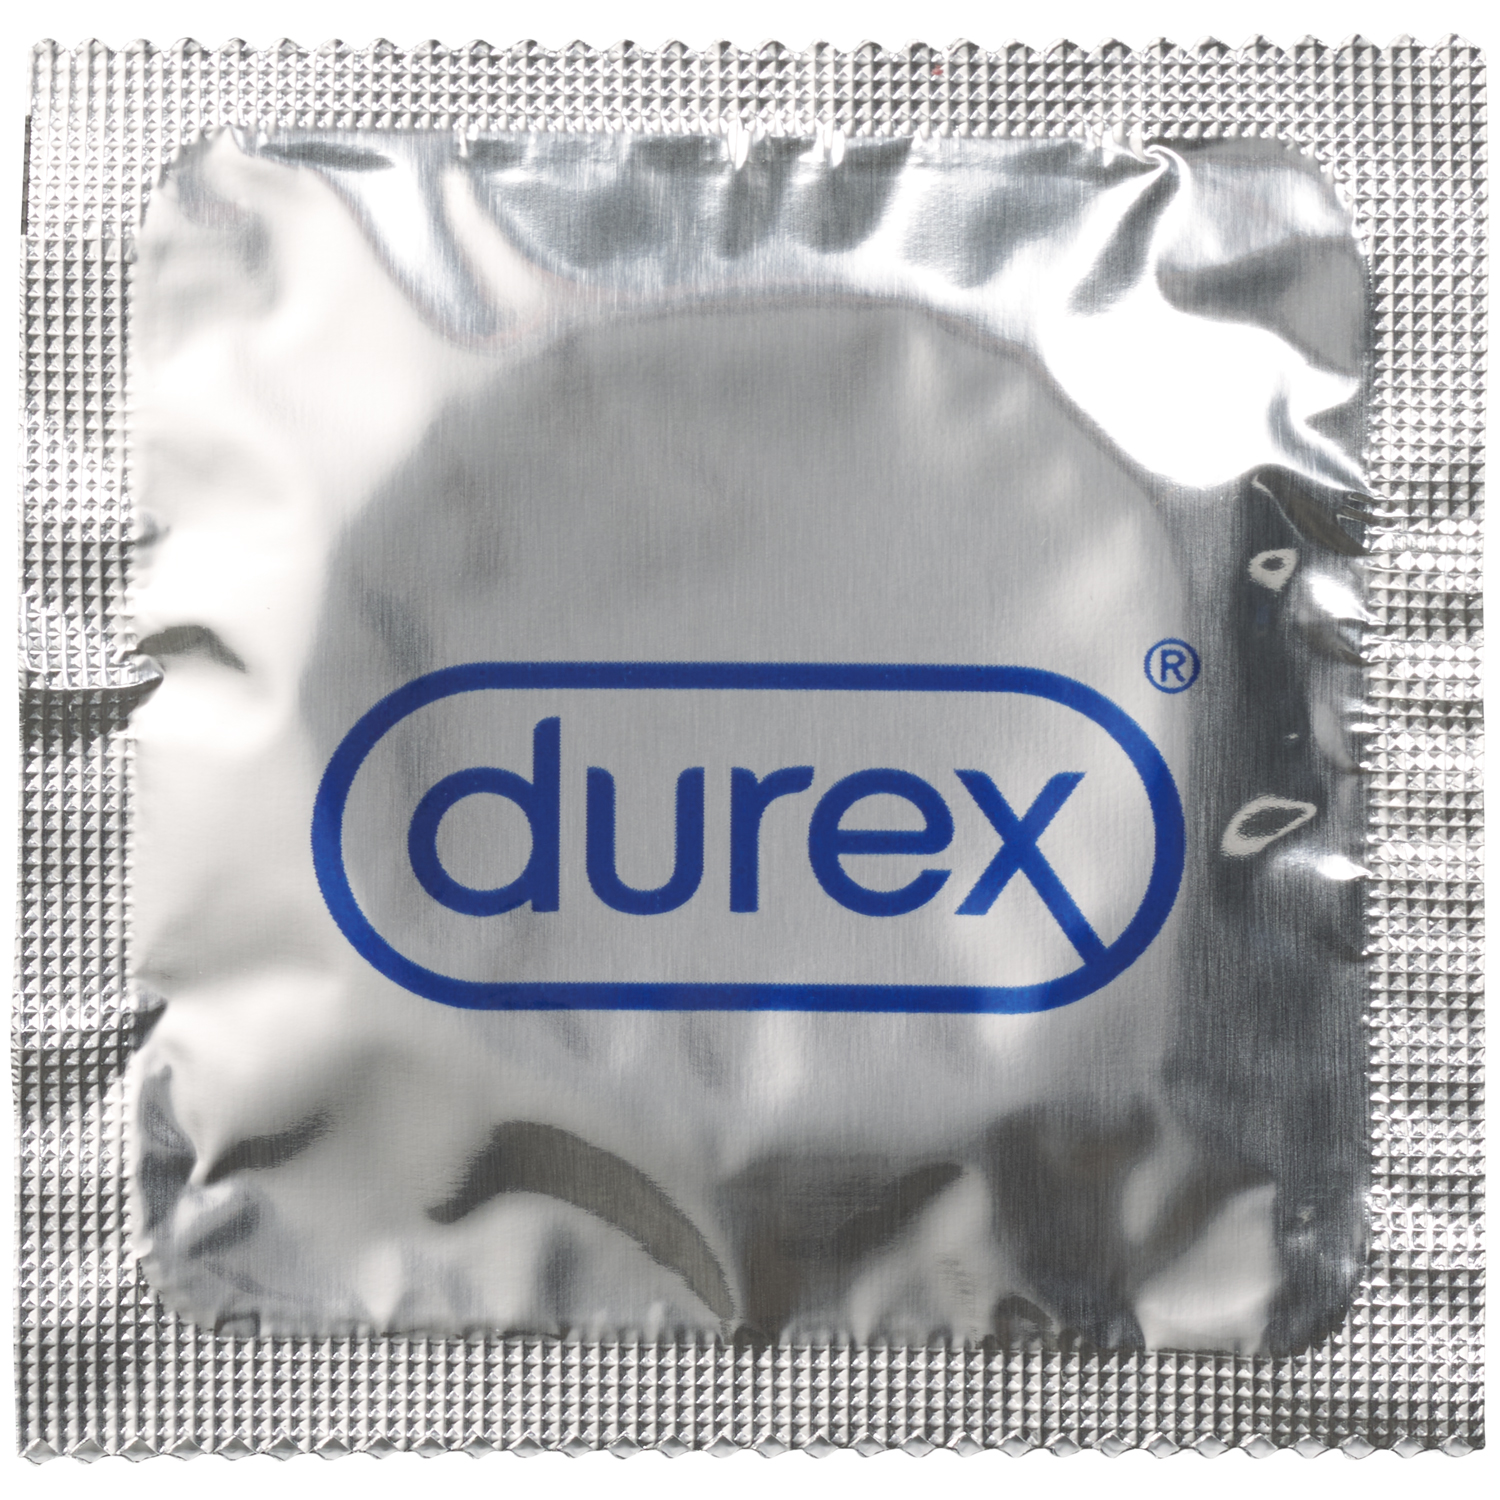 Durex Intense Préservatifs - Lot de 16 préservatifs 